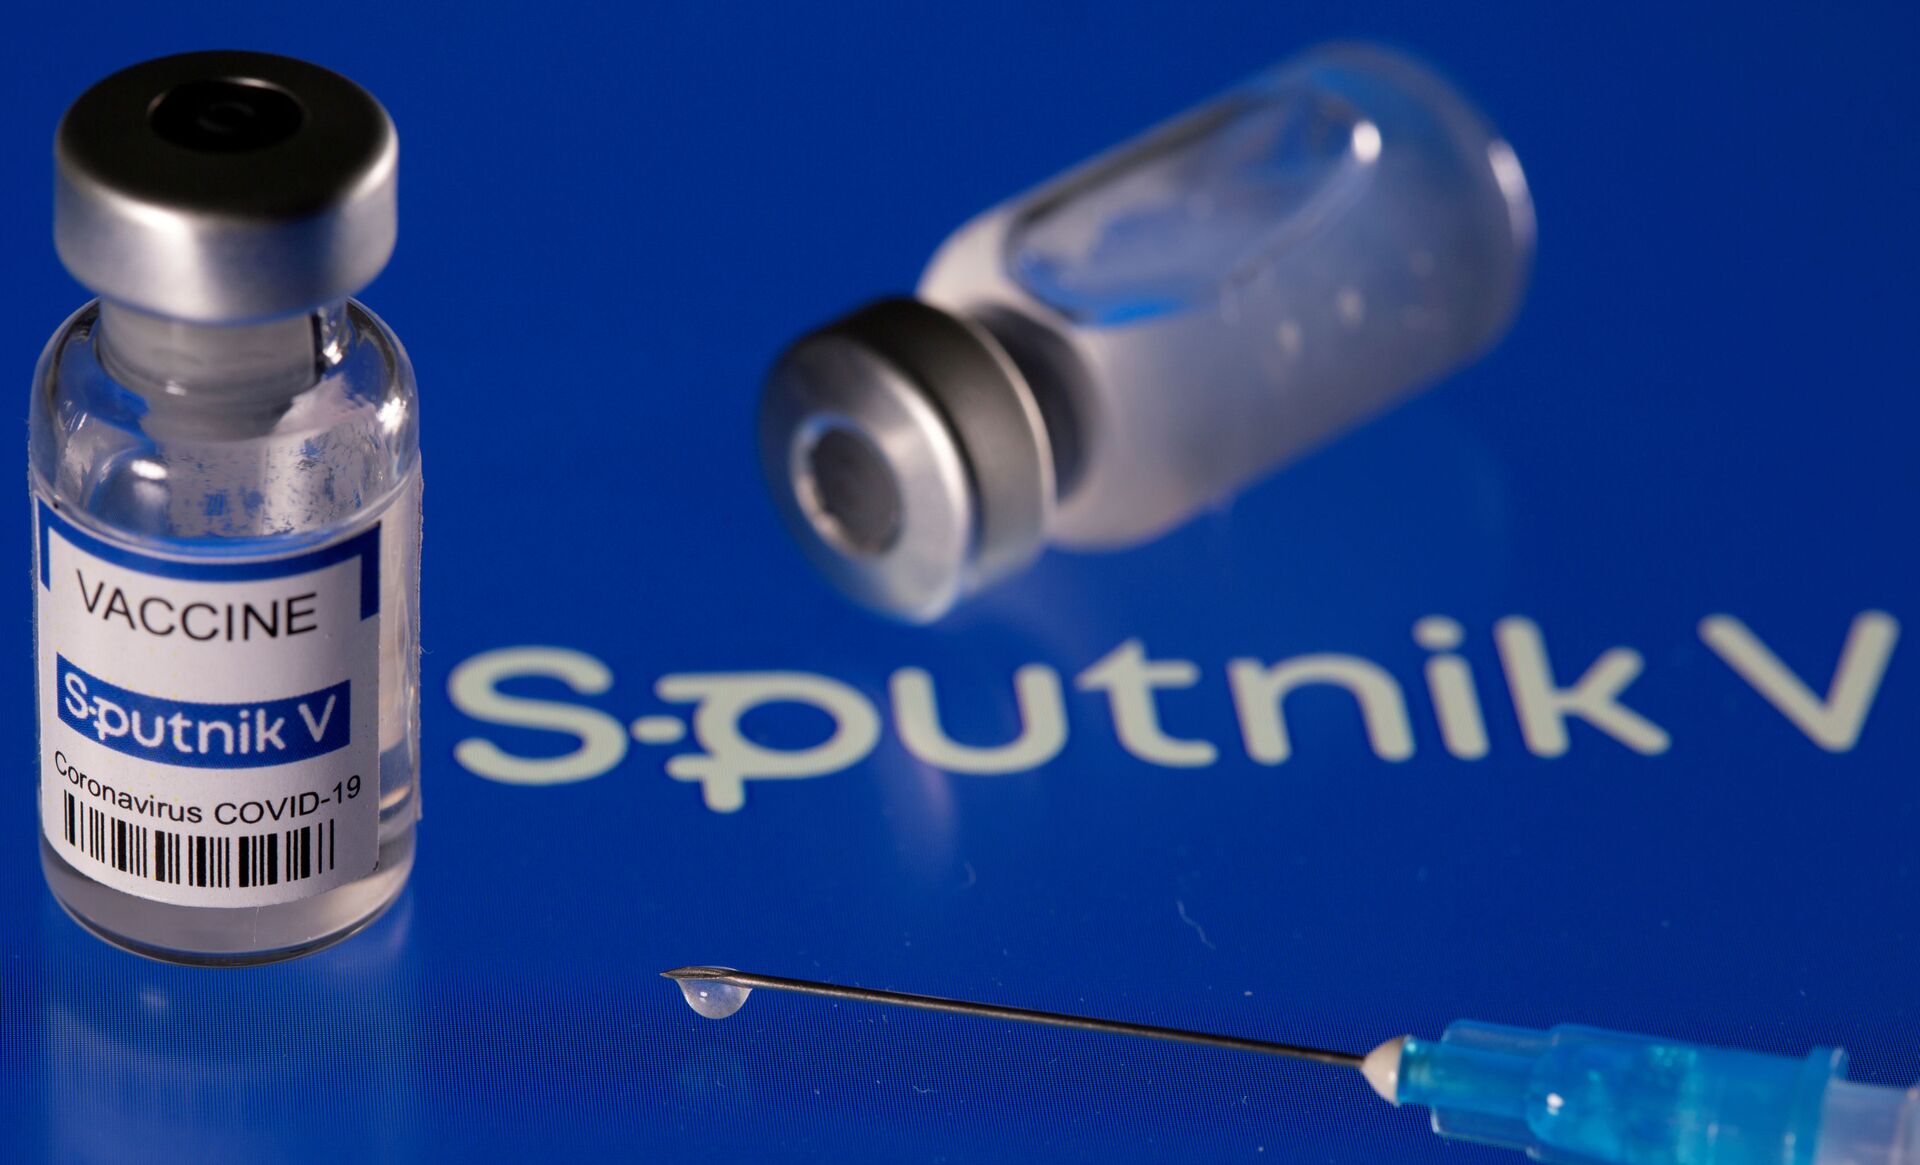 Vacinas da Pfizer no Brasil: especialista aponta o que muda no processo de imunização - Sputnik Brasil, 1920, 15.04.2021